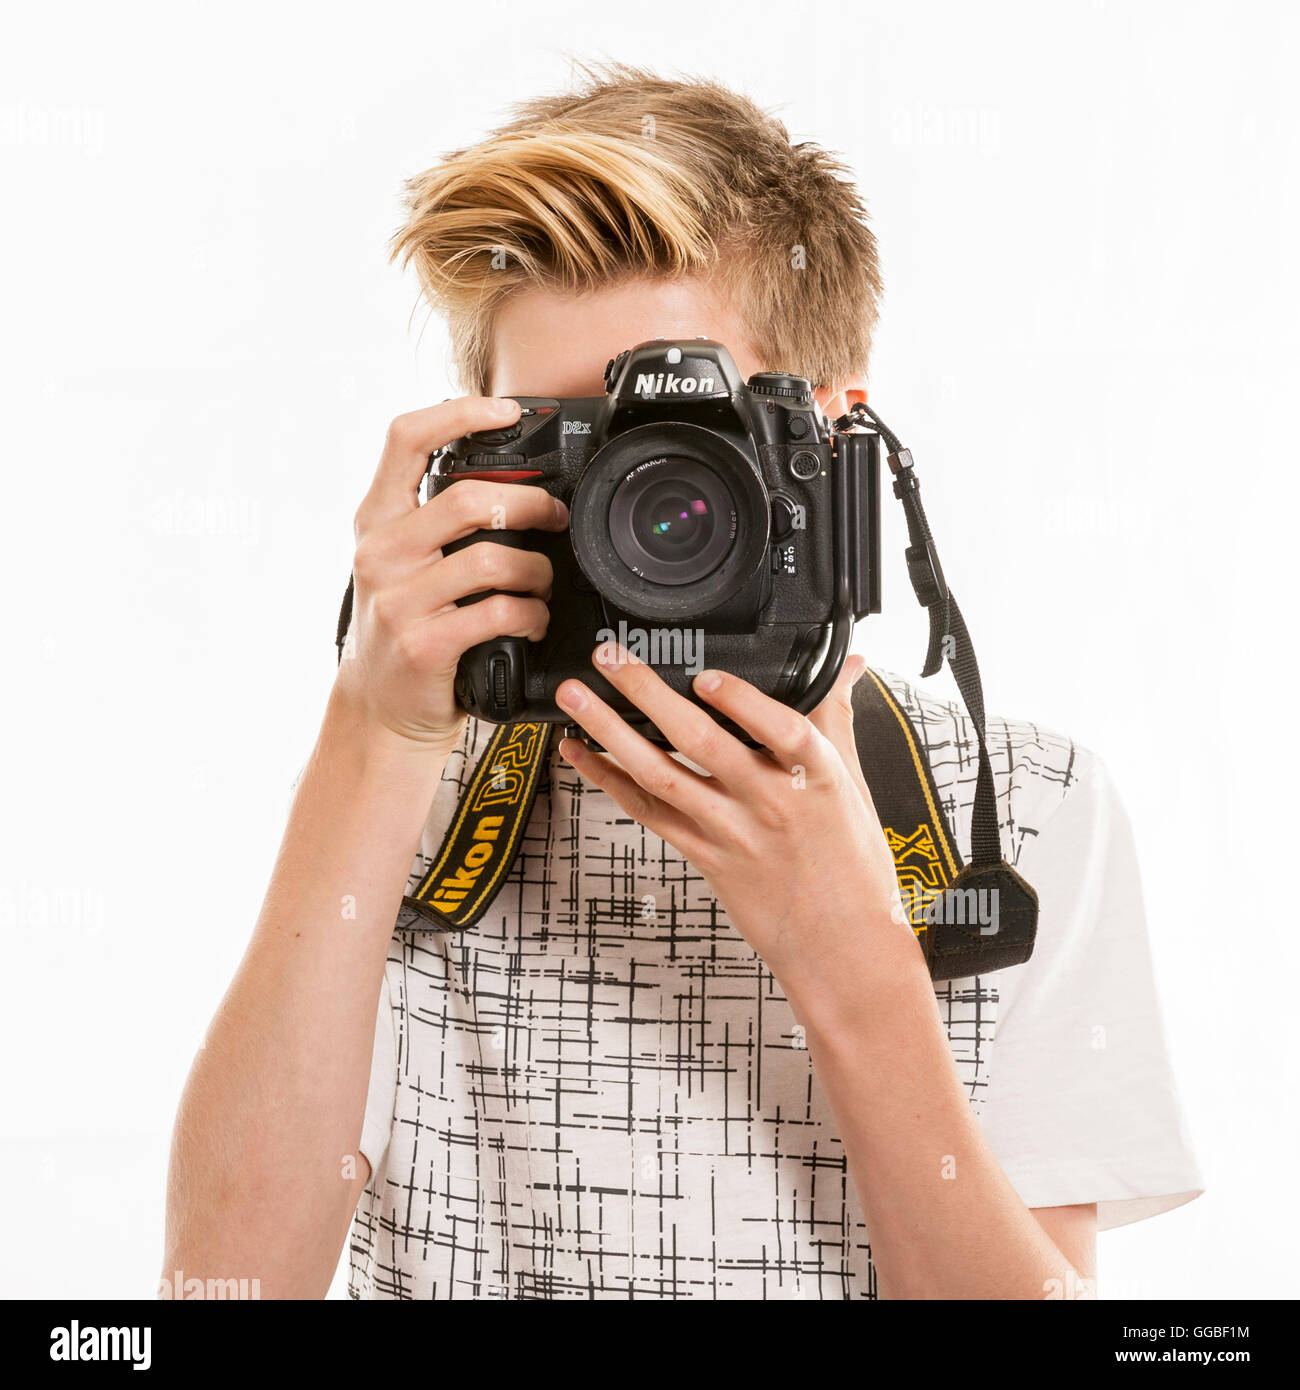 Eine angehende junge Teenager Fotografin im Vereinigten Königreich Stockfoto